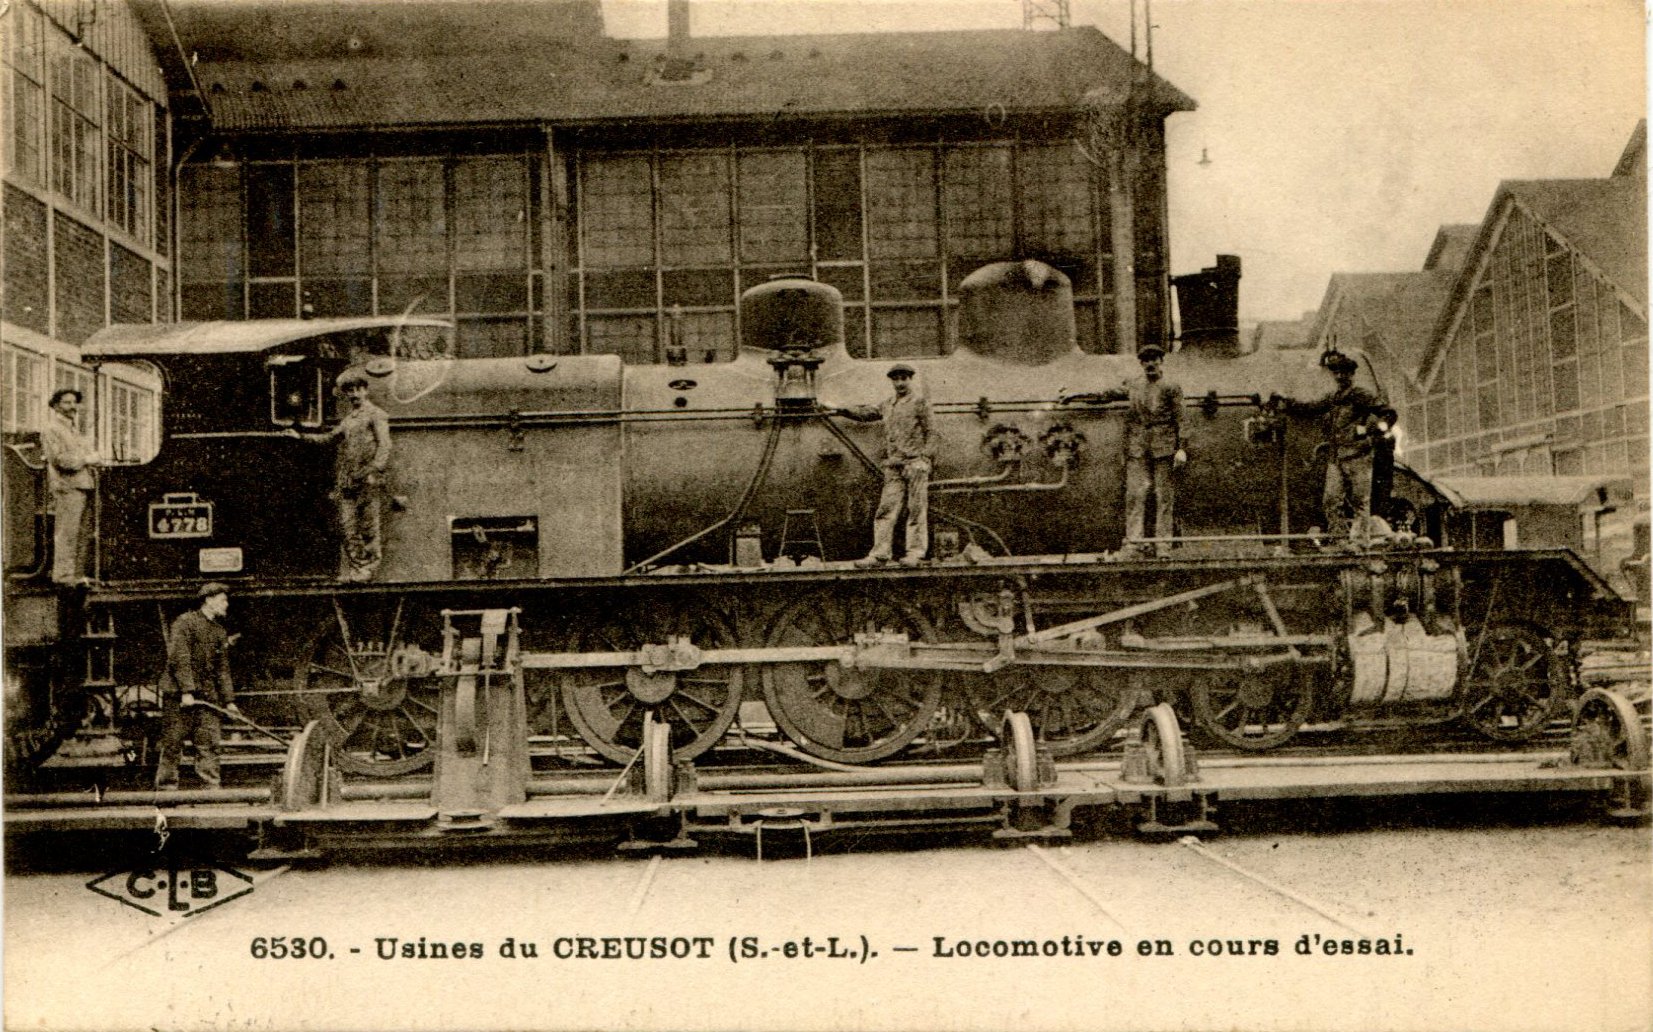 Locomotive en cours d'essai